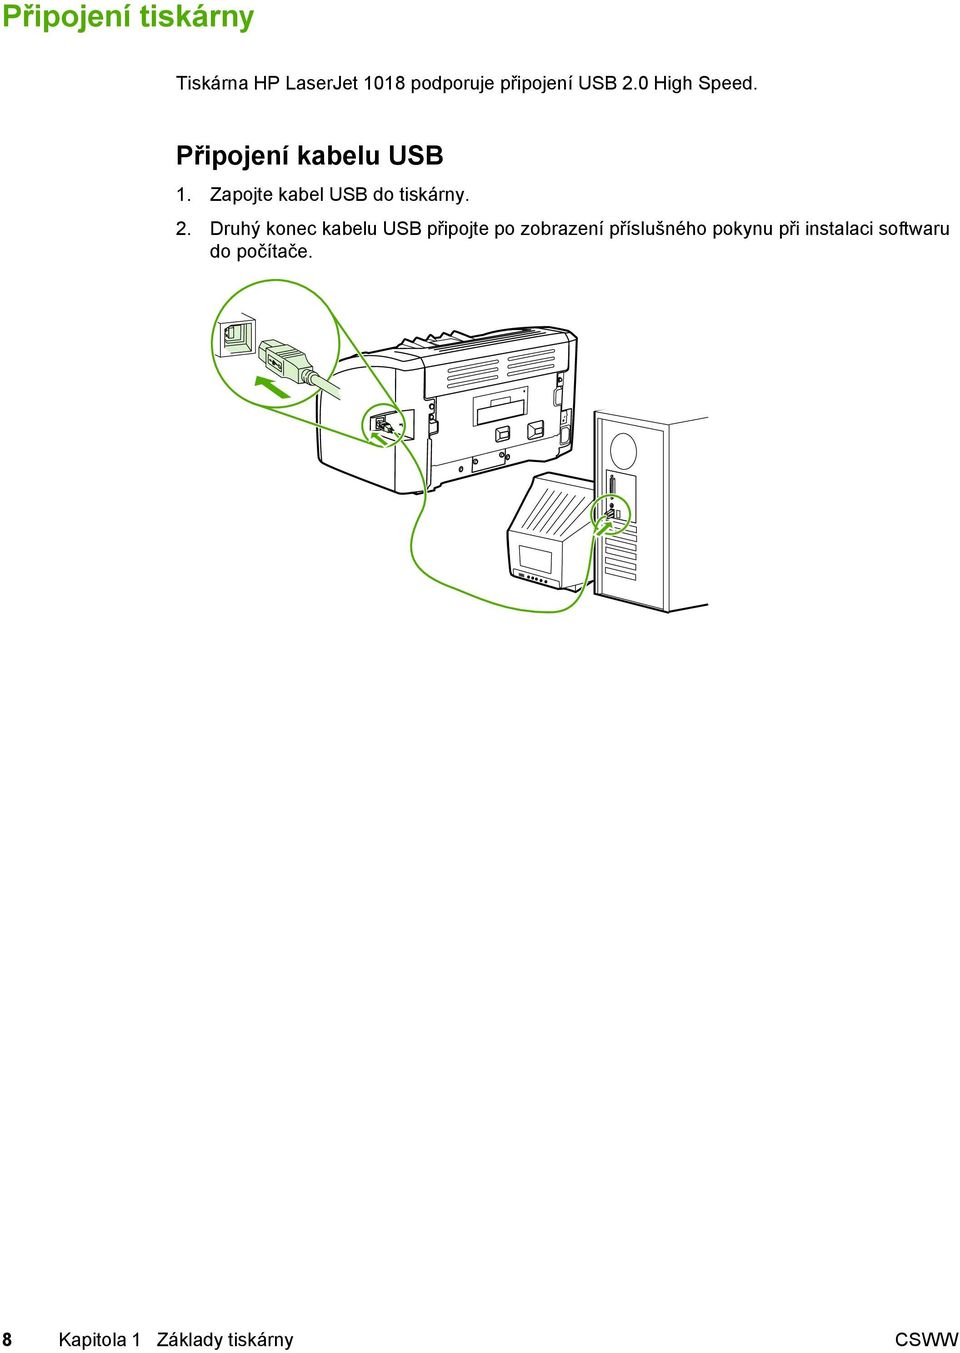 2. Druhý konec kabelu USB připojte po zobrazení příslušného pokynu